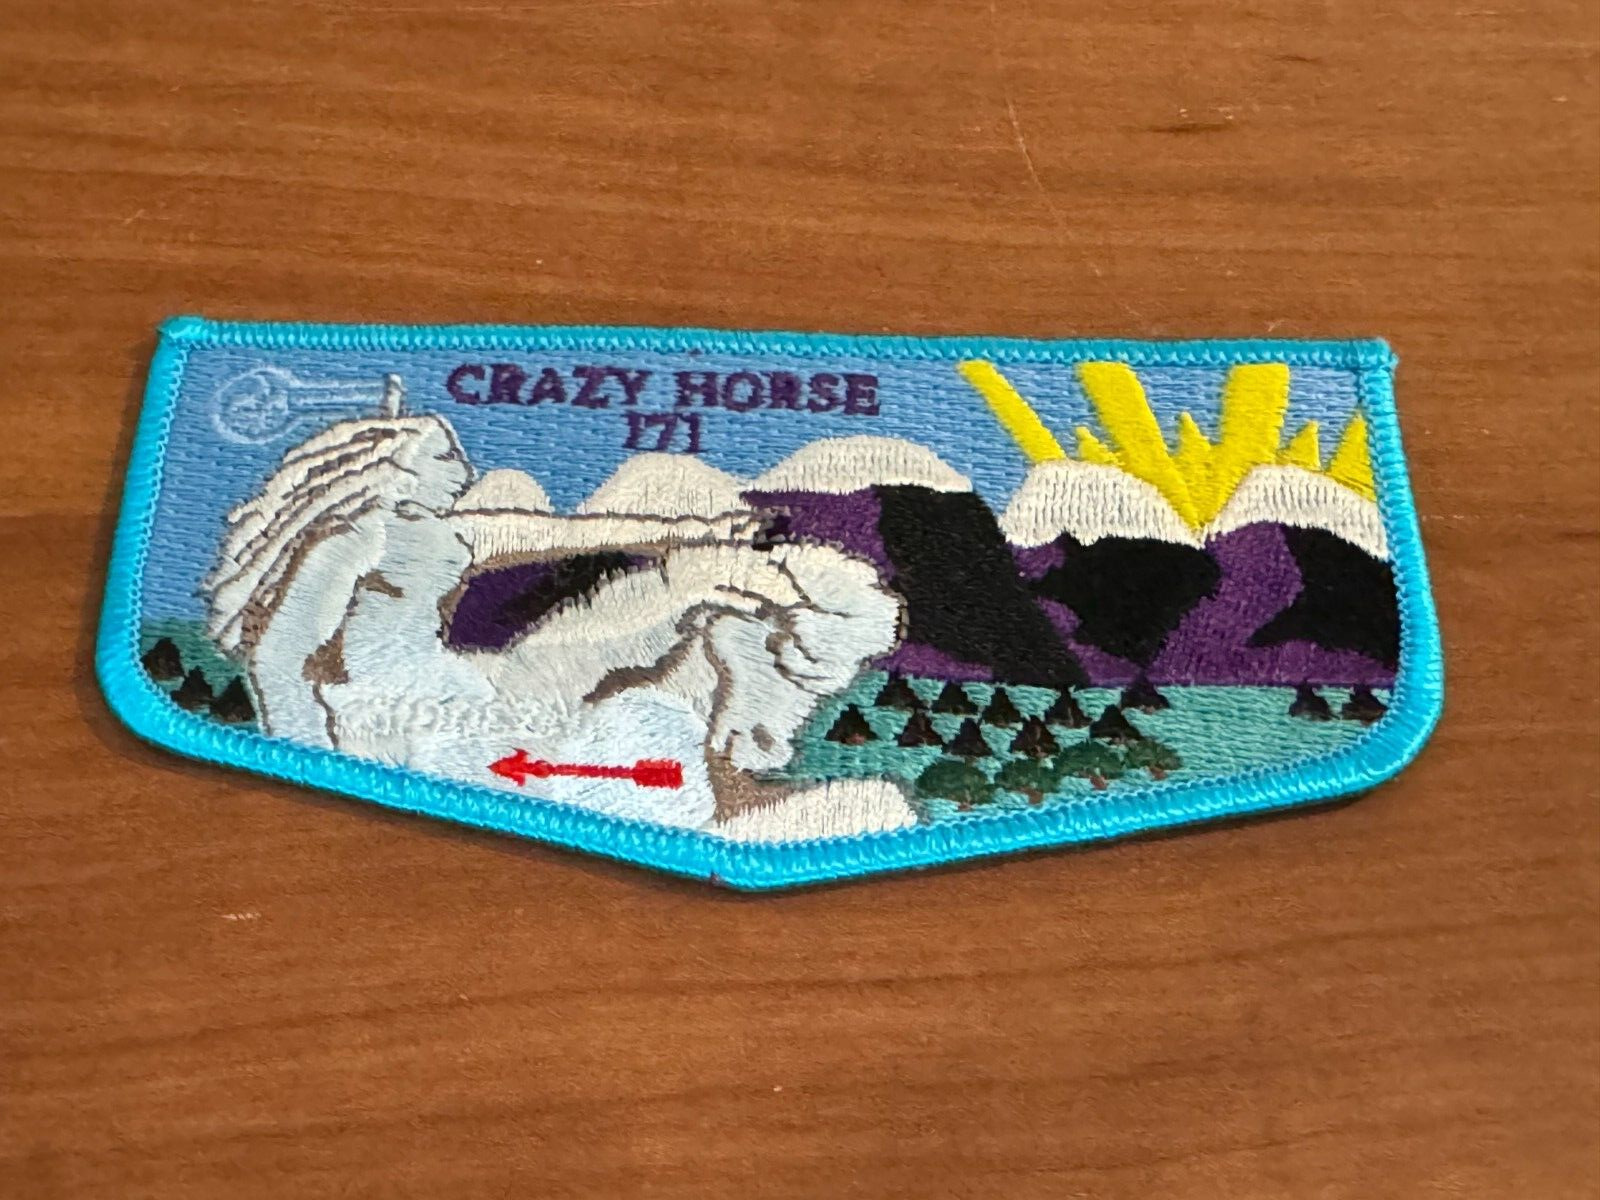 OA, Crazy Horse (171) Flap (S-8b)